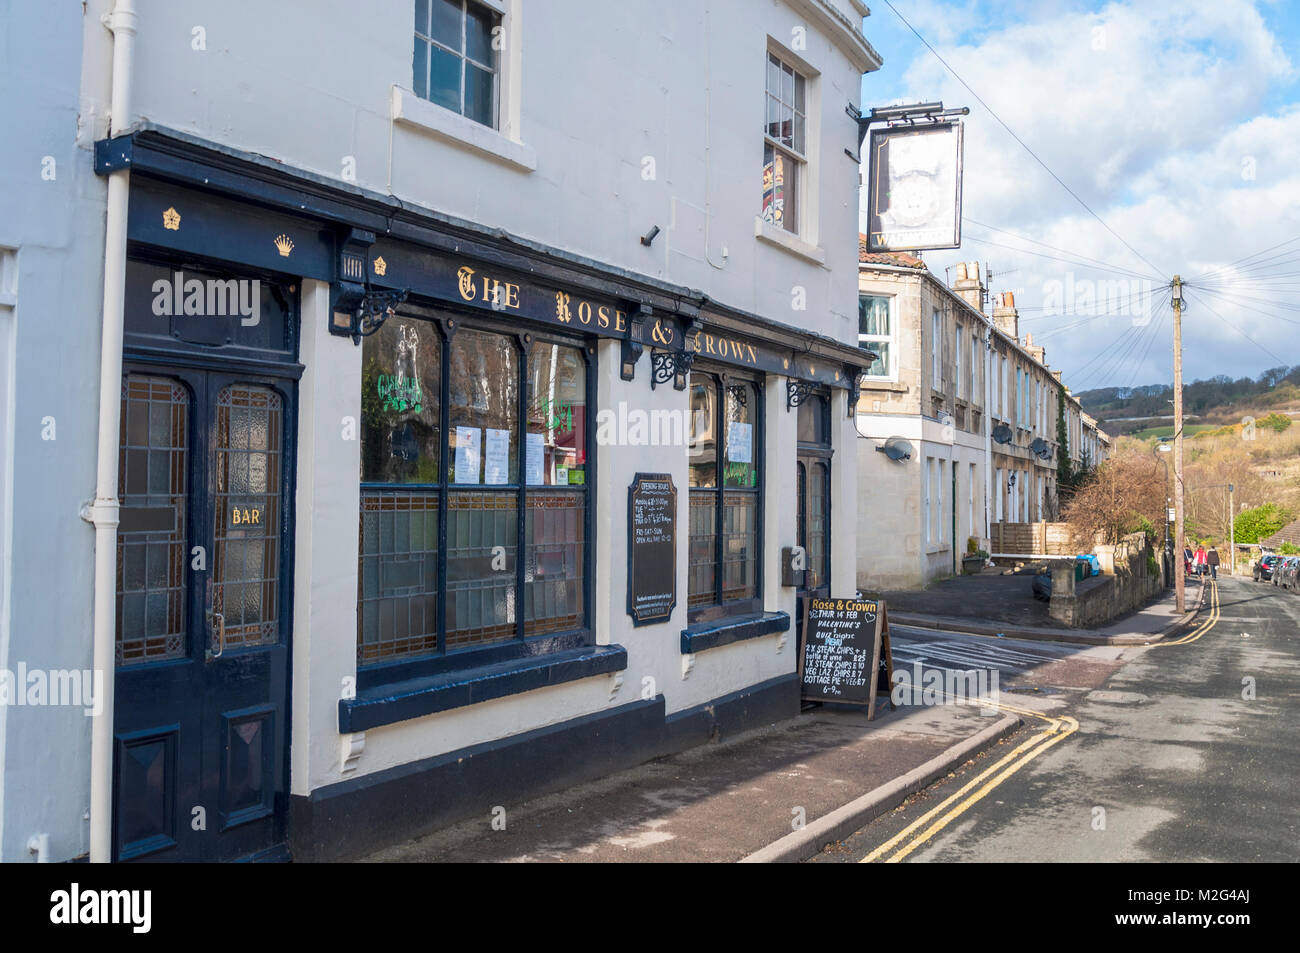 The Rose and Crown pub public house à Larkhall village près de Bath, Somerset, England, UK Banque D'Images